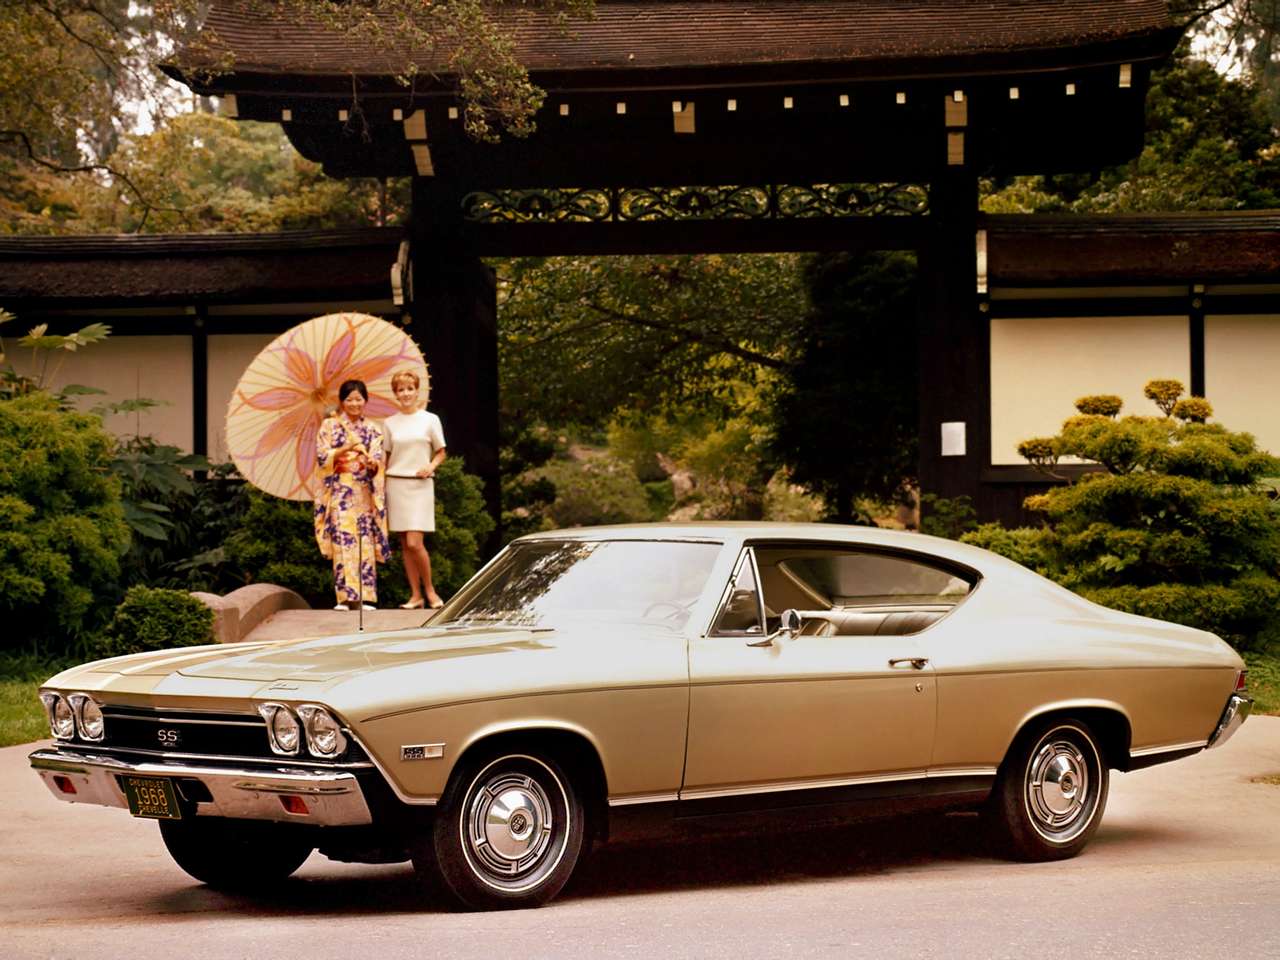 1968 Chevrolet Chevelle Malibu ss hardtop coupe pussel på nätet